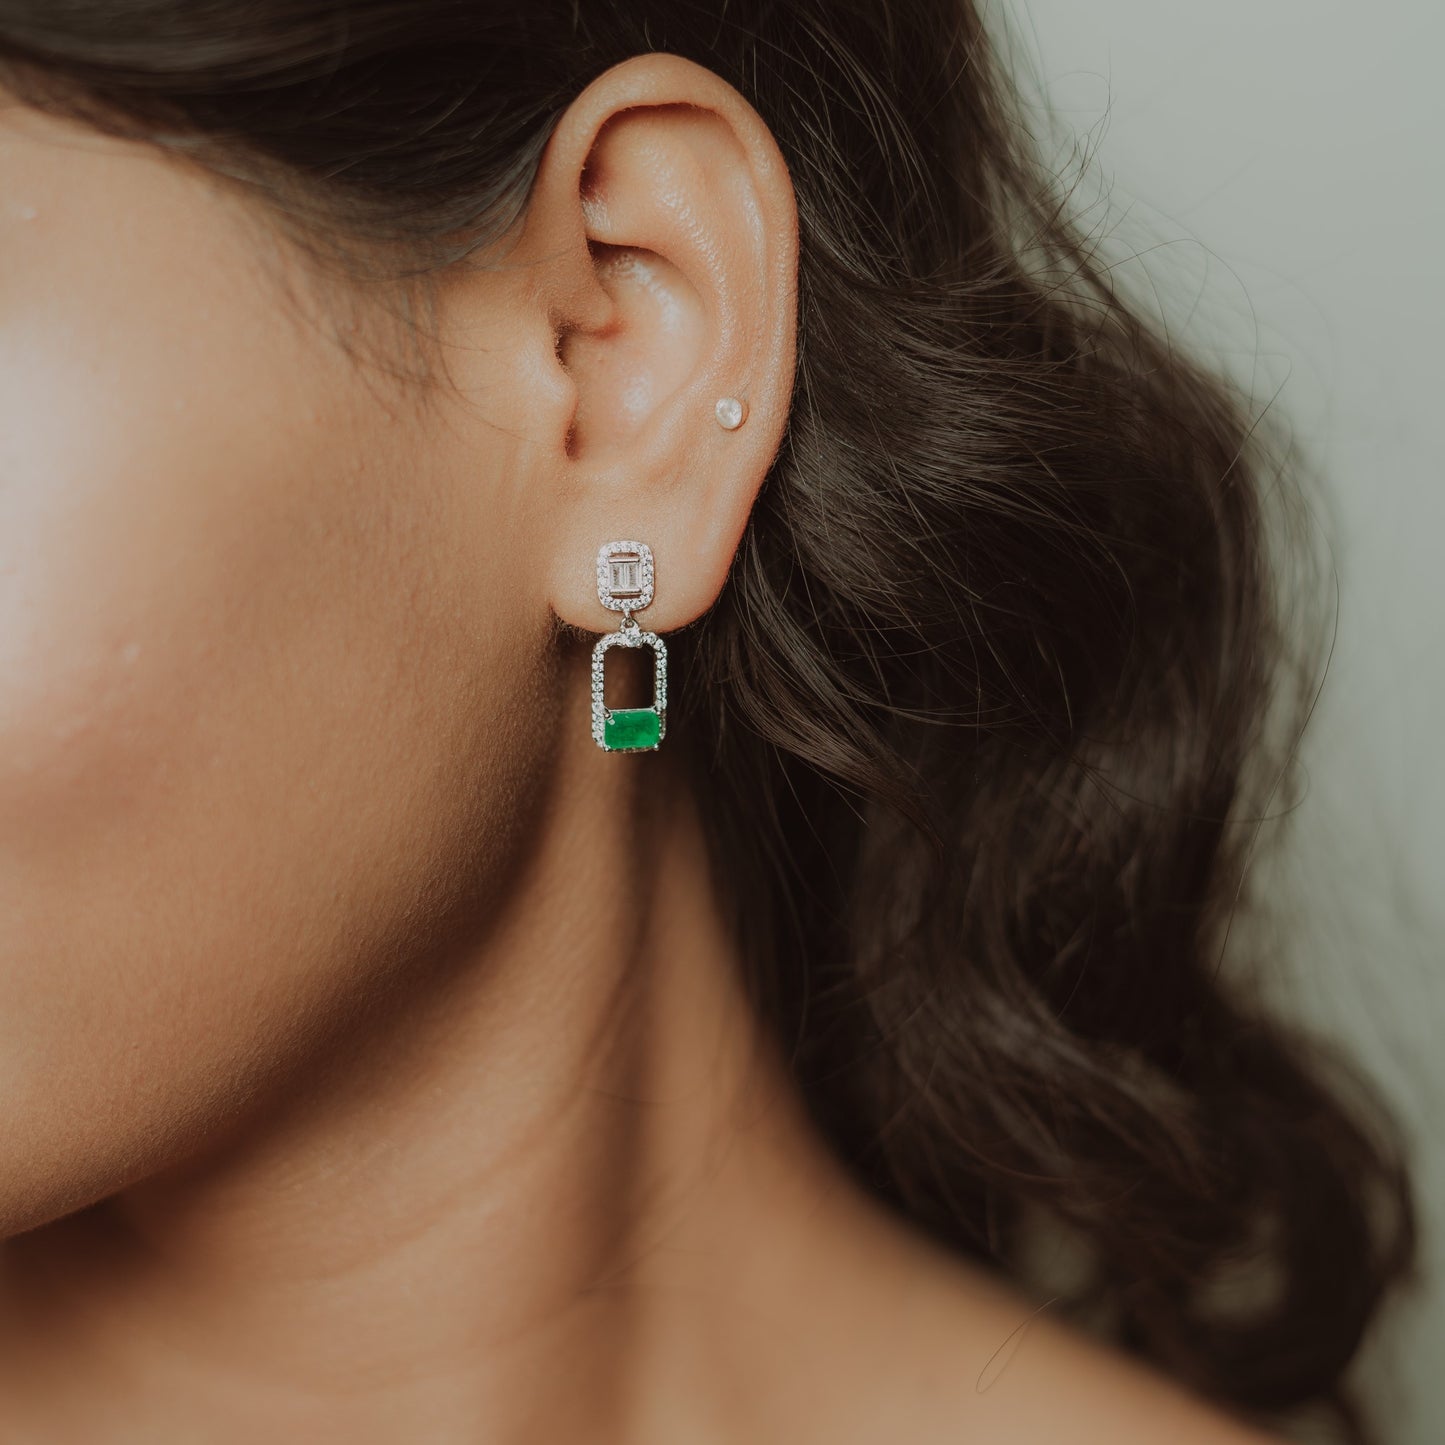 Vintage style crystal drop earrings